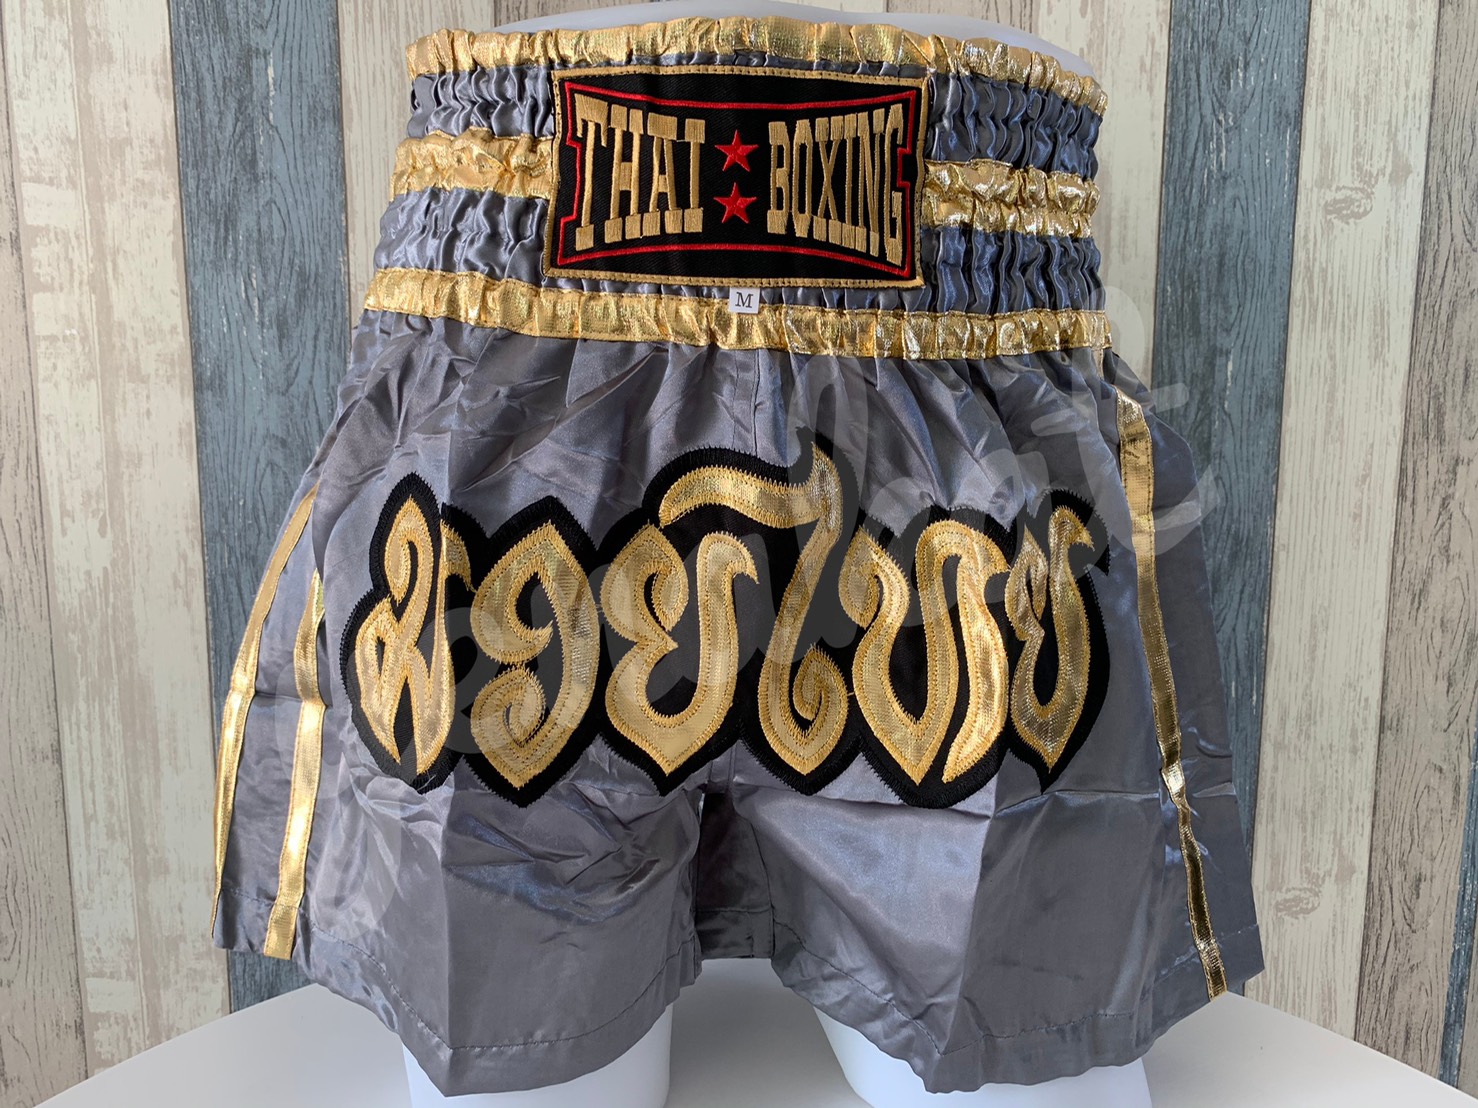 กางเกงมวย กางเกงมวยไทย กางเกงชกมวย ปักลายดิ้นทอง ไซส์ผู้ใหญ่ ผ้าซาติน Muay Thai Shorts ไซส์ M-XXXL สีเทา